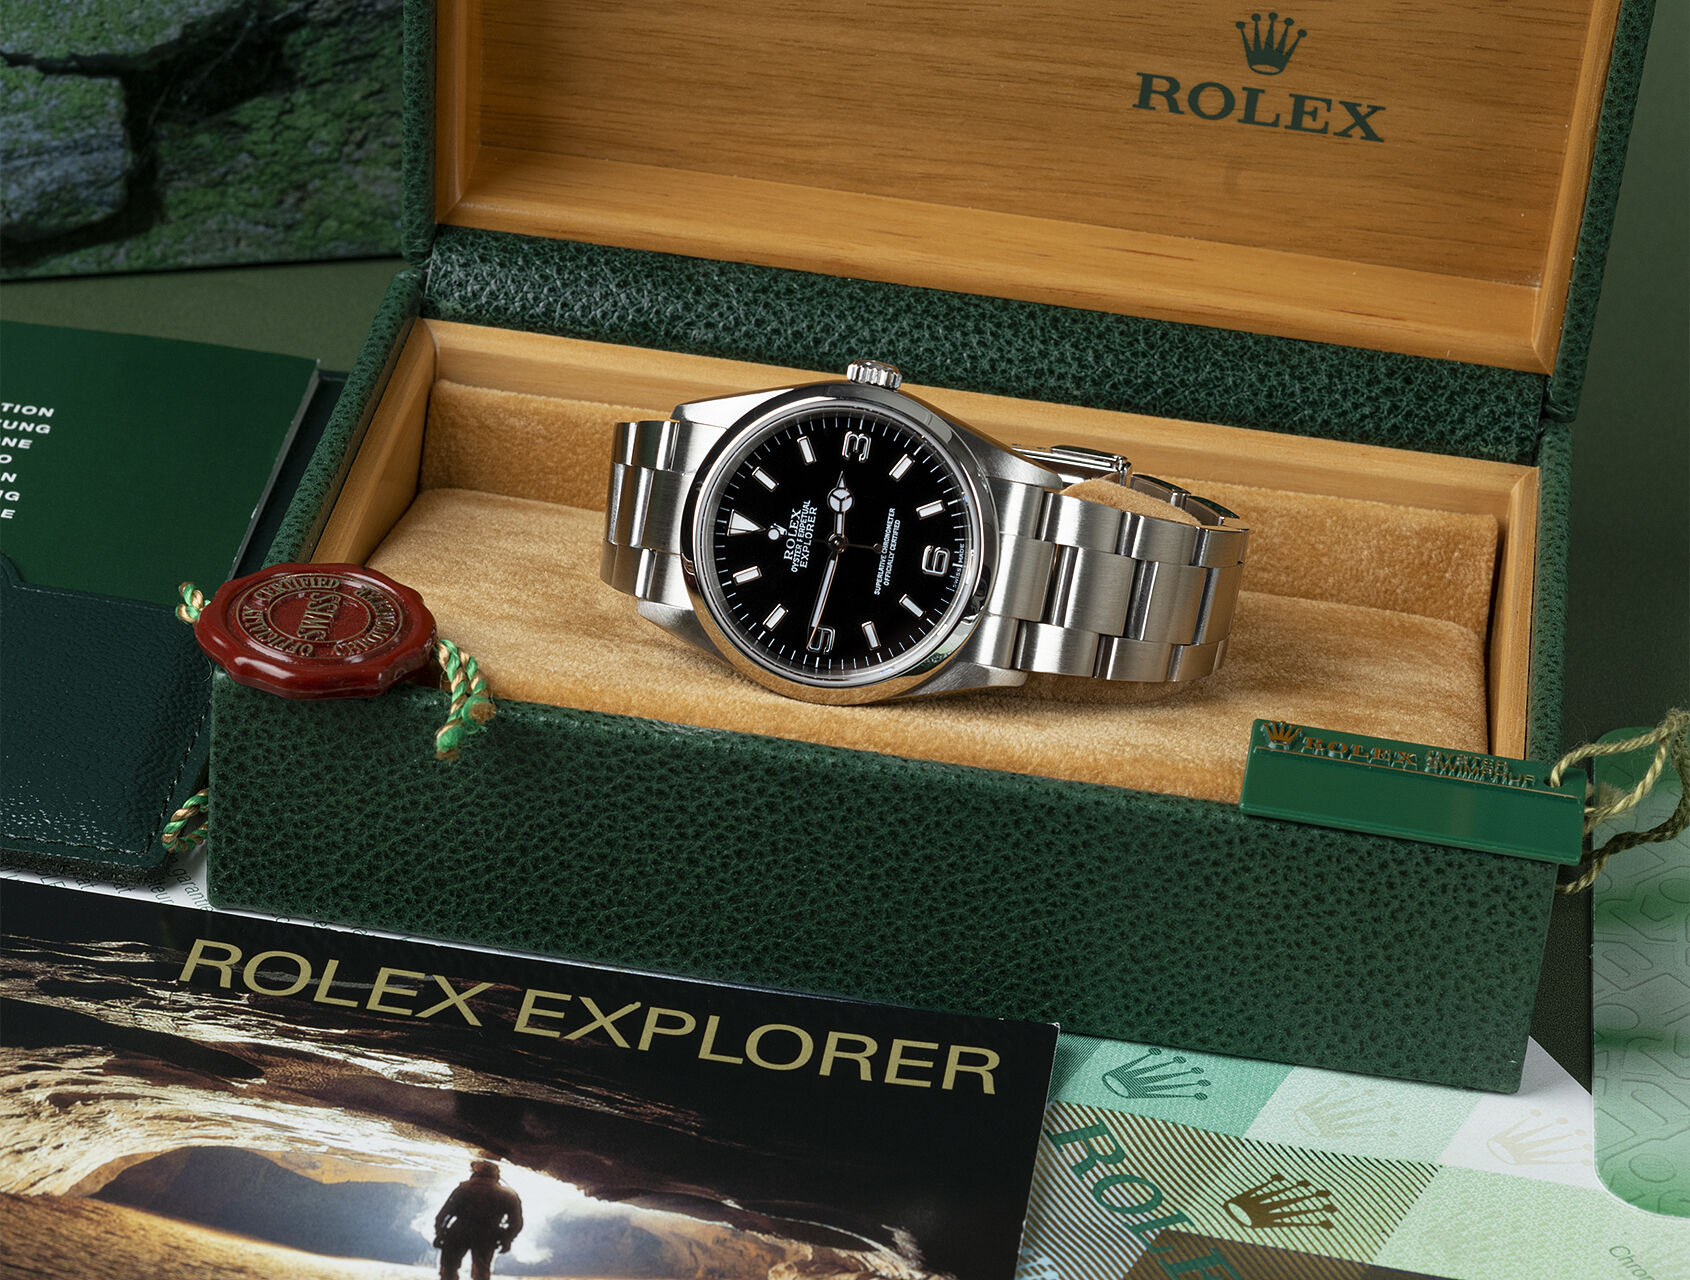 ref 114270 | 114270 - Box & Certificate | Rolex Explorer